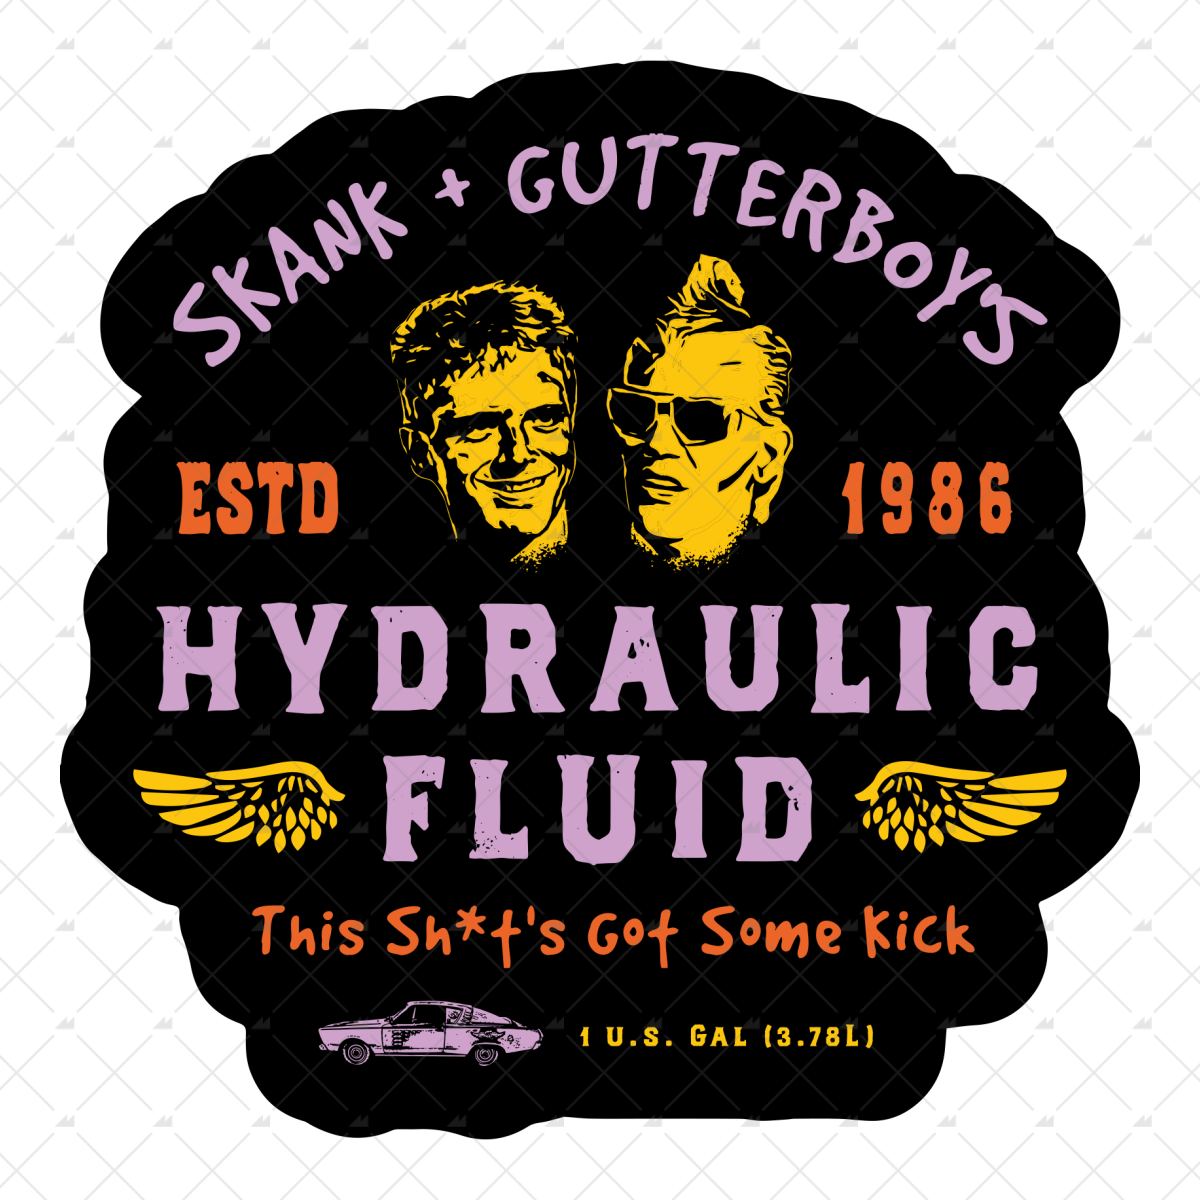 Skank & Gutterboy's Hydraulic Fluid - Sticker